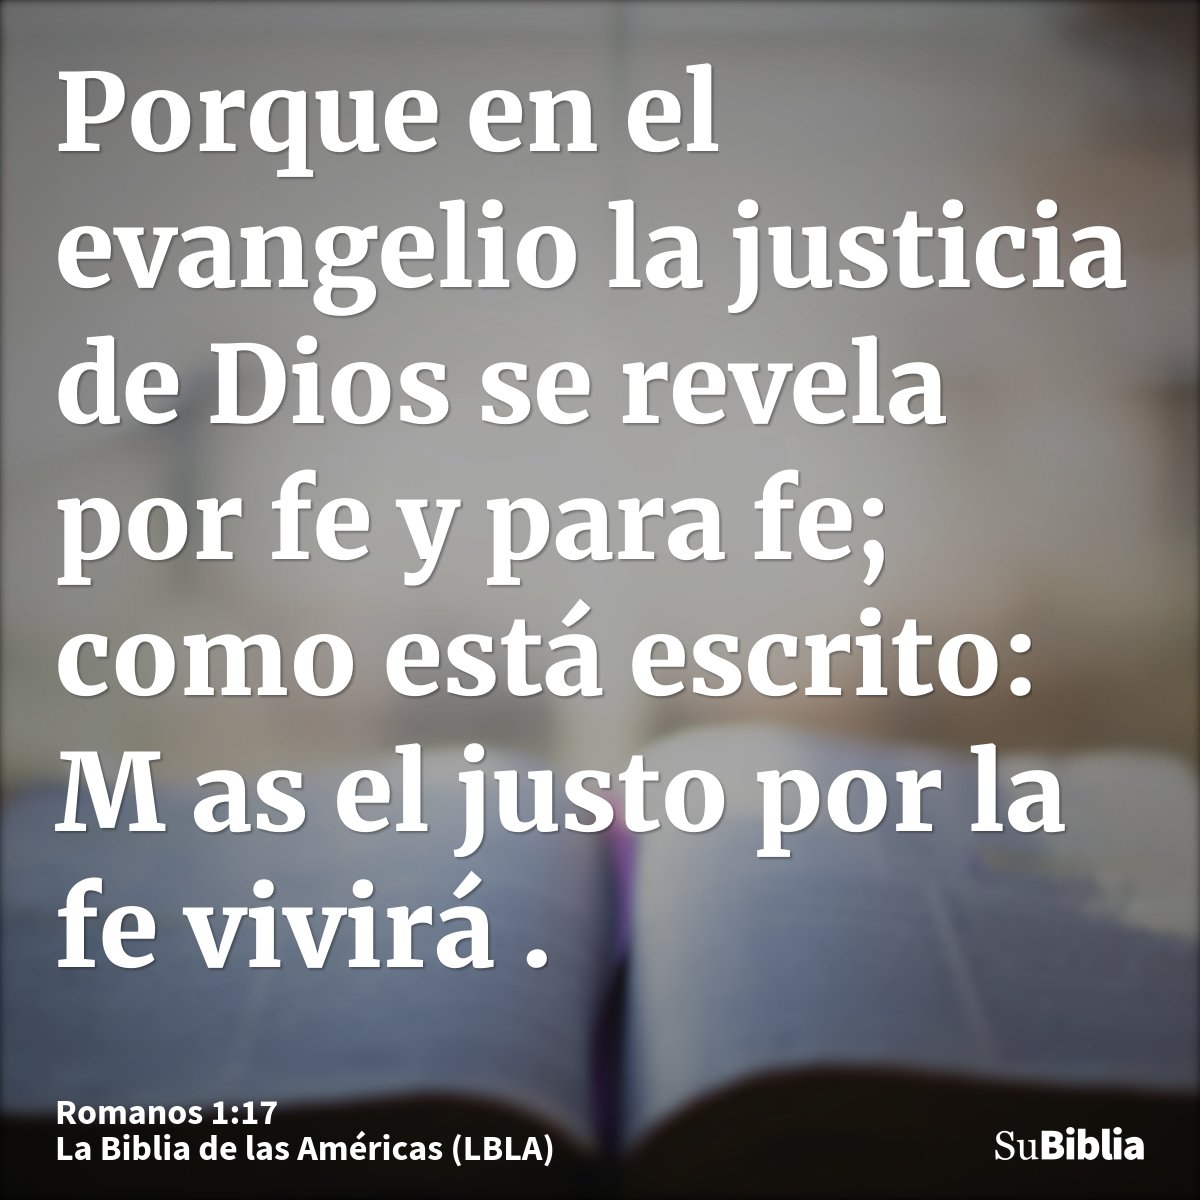 Porque en el evangelio la justicia de Dios se revela por fe y para fe; como está escrito: M as el justo por la fe vivirá .